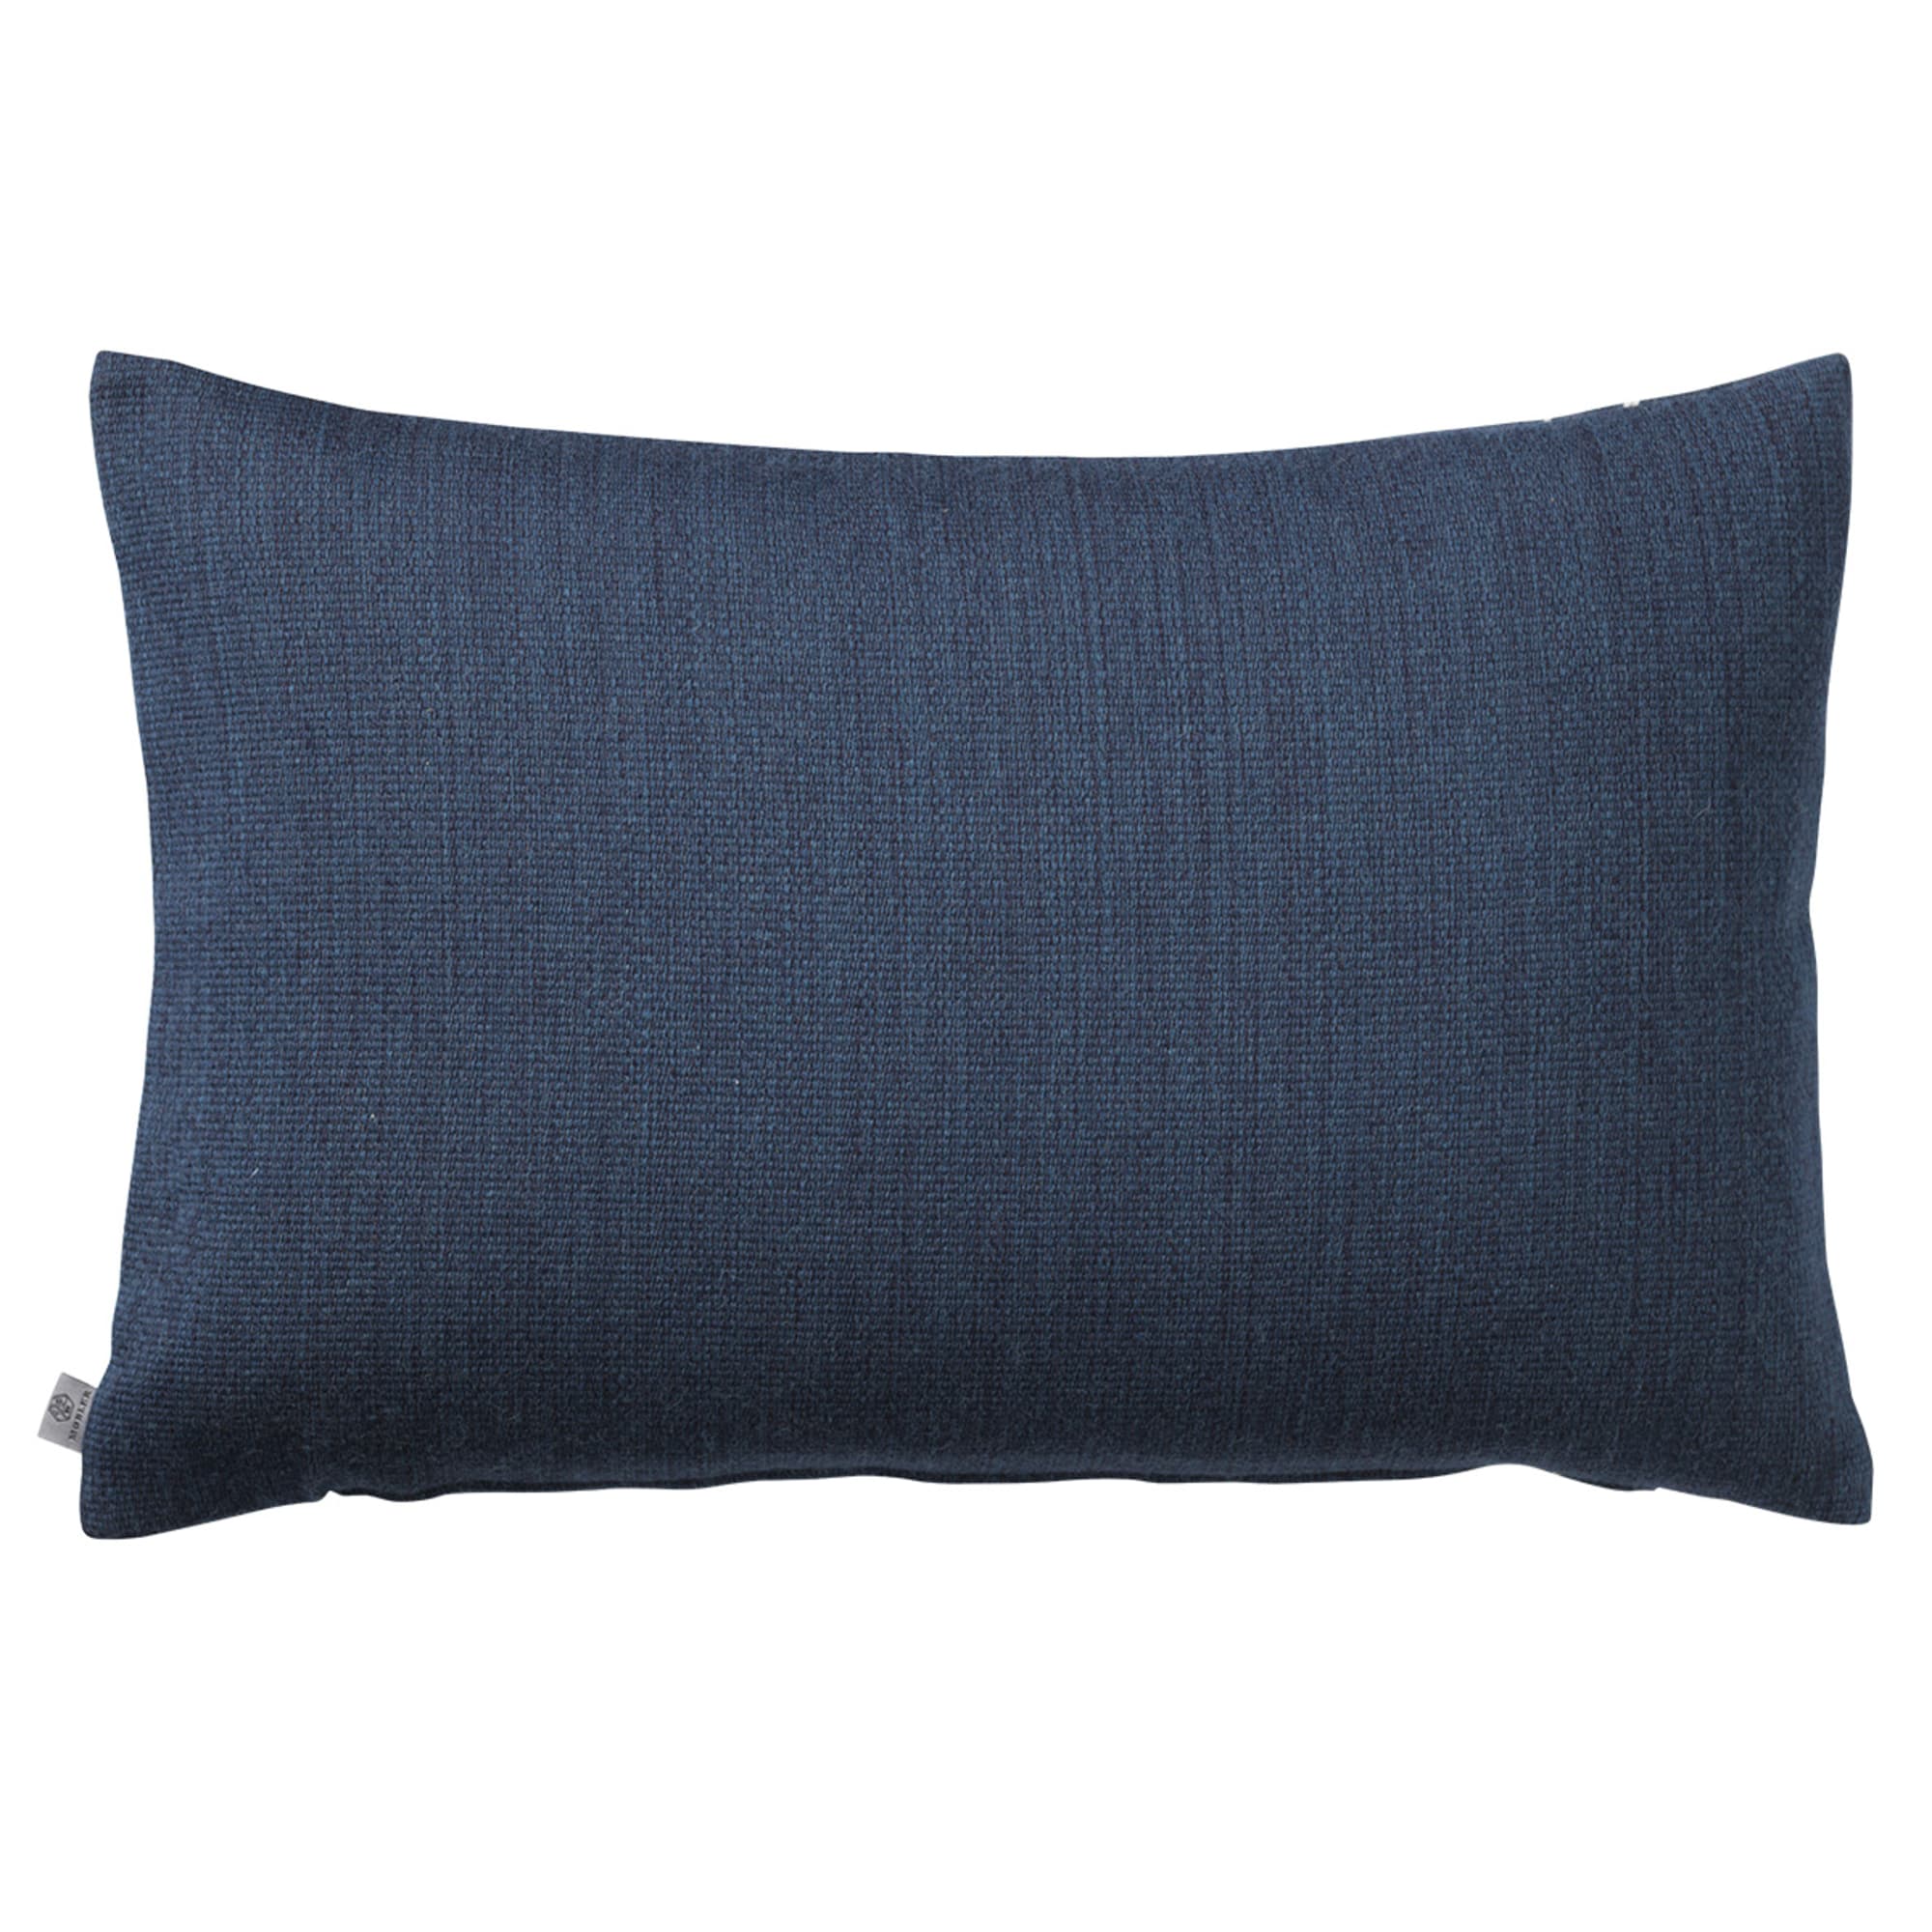 Fdb Møbler R17 Råbjerg Cushion Bleu, 40x60cm